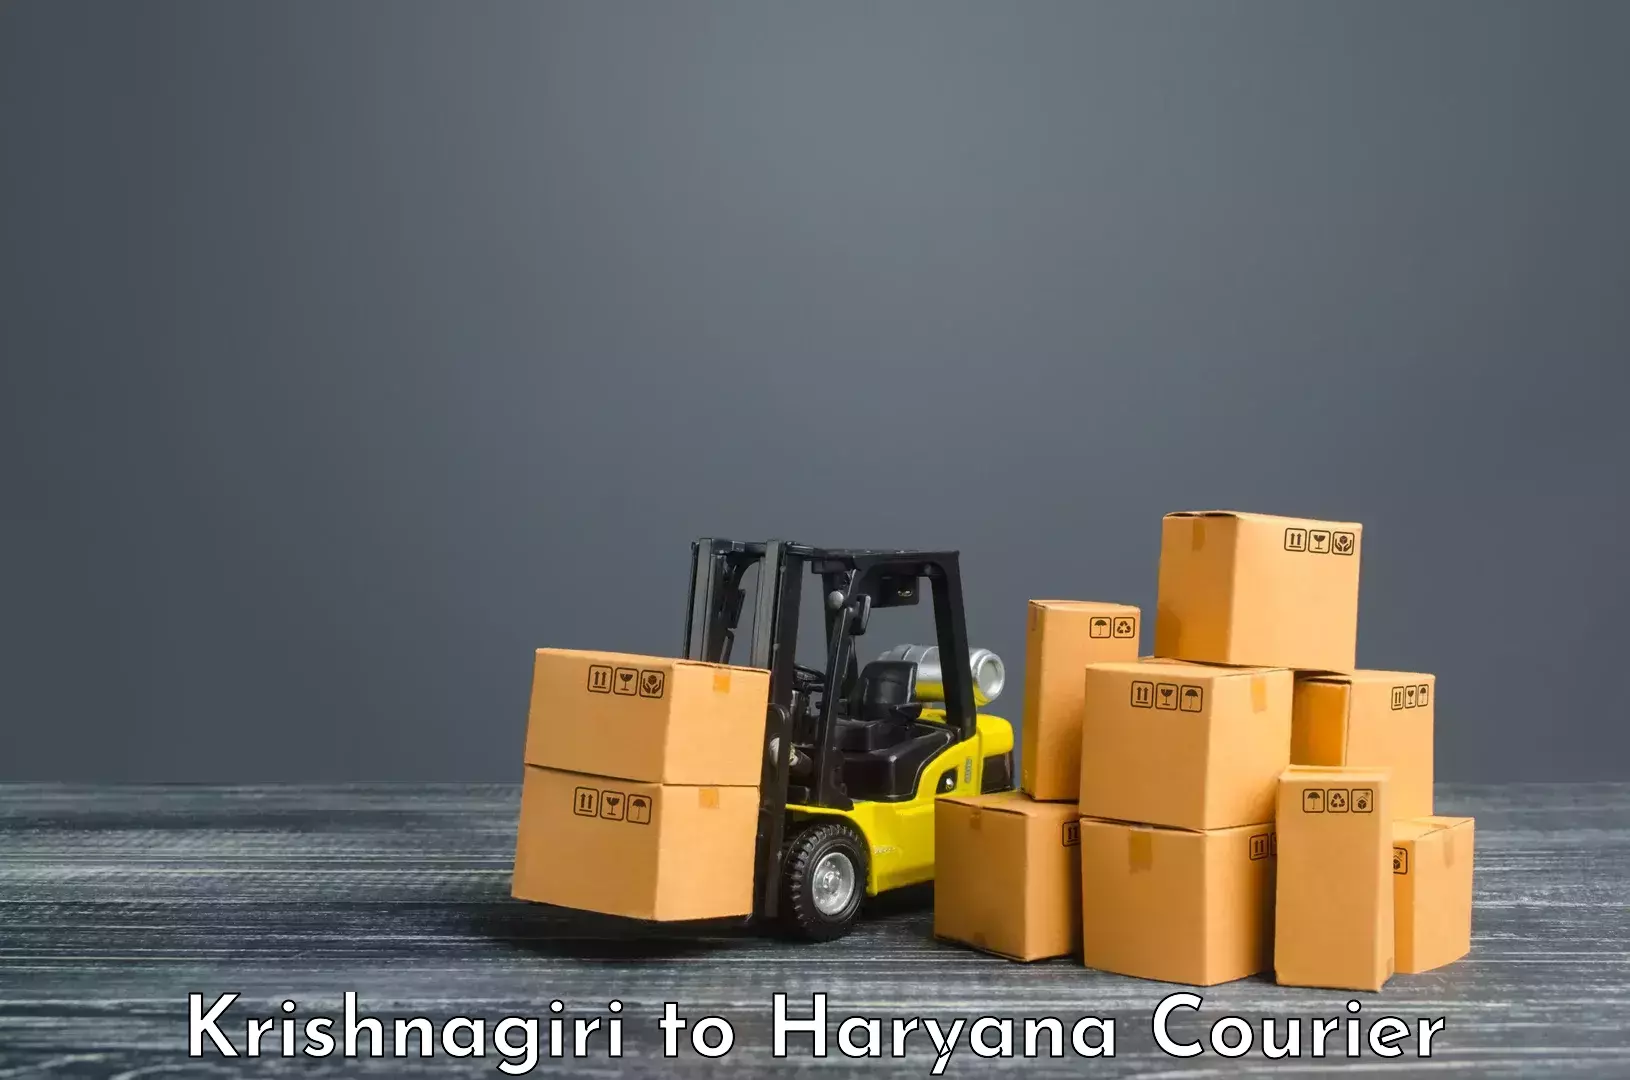 Business delivery service Krishnagiri to Chirya